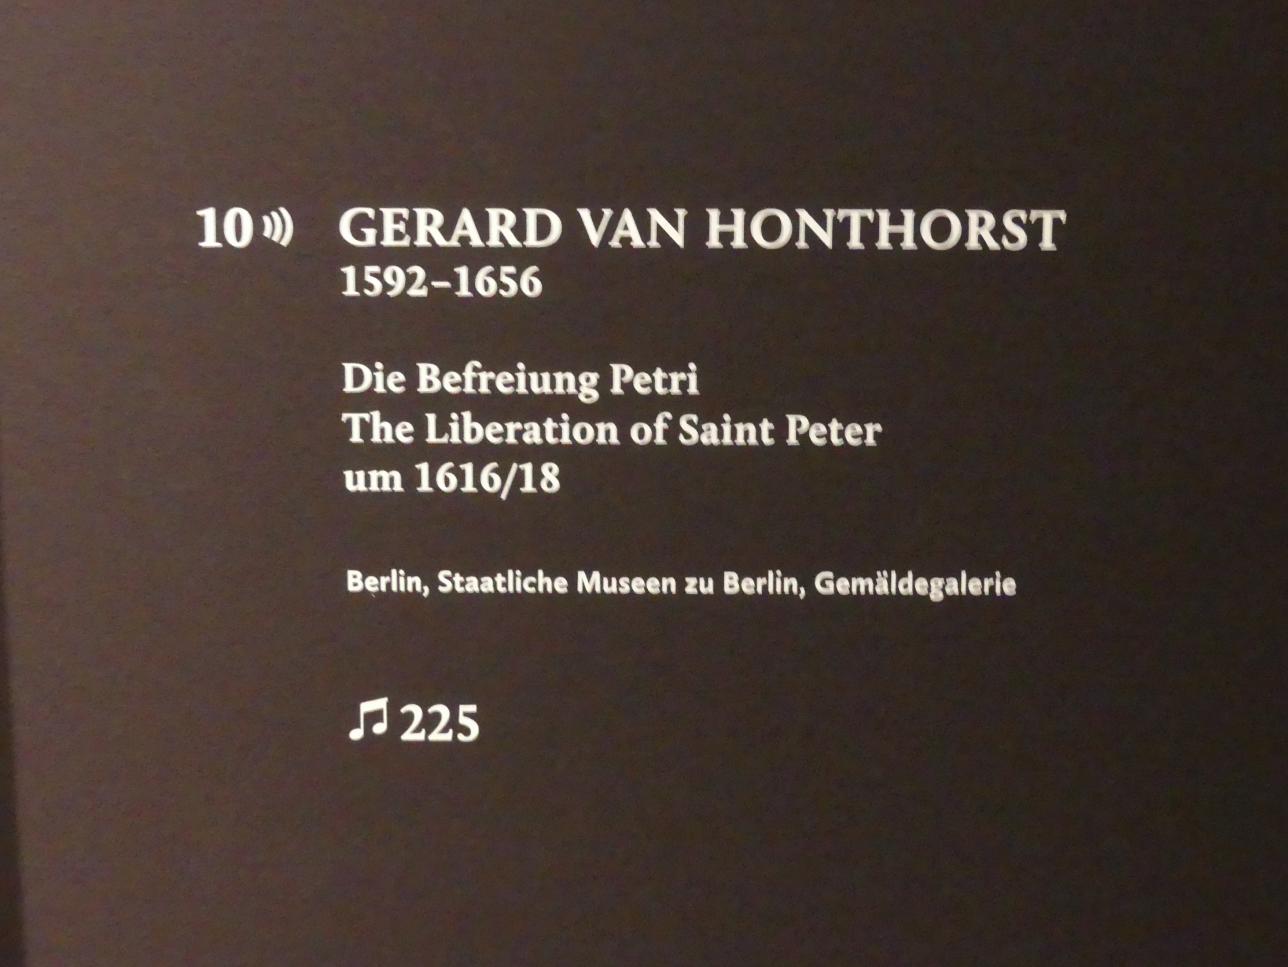 Gerrit van Honthorst (Gerard van Honthorst) (1616–1655), Die Befreiung Petri, München, Alte Pinakothek, Ausstellung "Utrecht, Caravaggio und Europa" vom 17.04.-21.07.2019, Heilige: Befreiung Petri, um 1616–1618, Bild 2/2